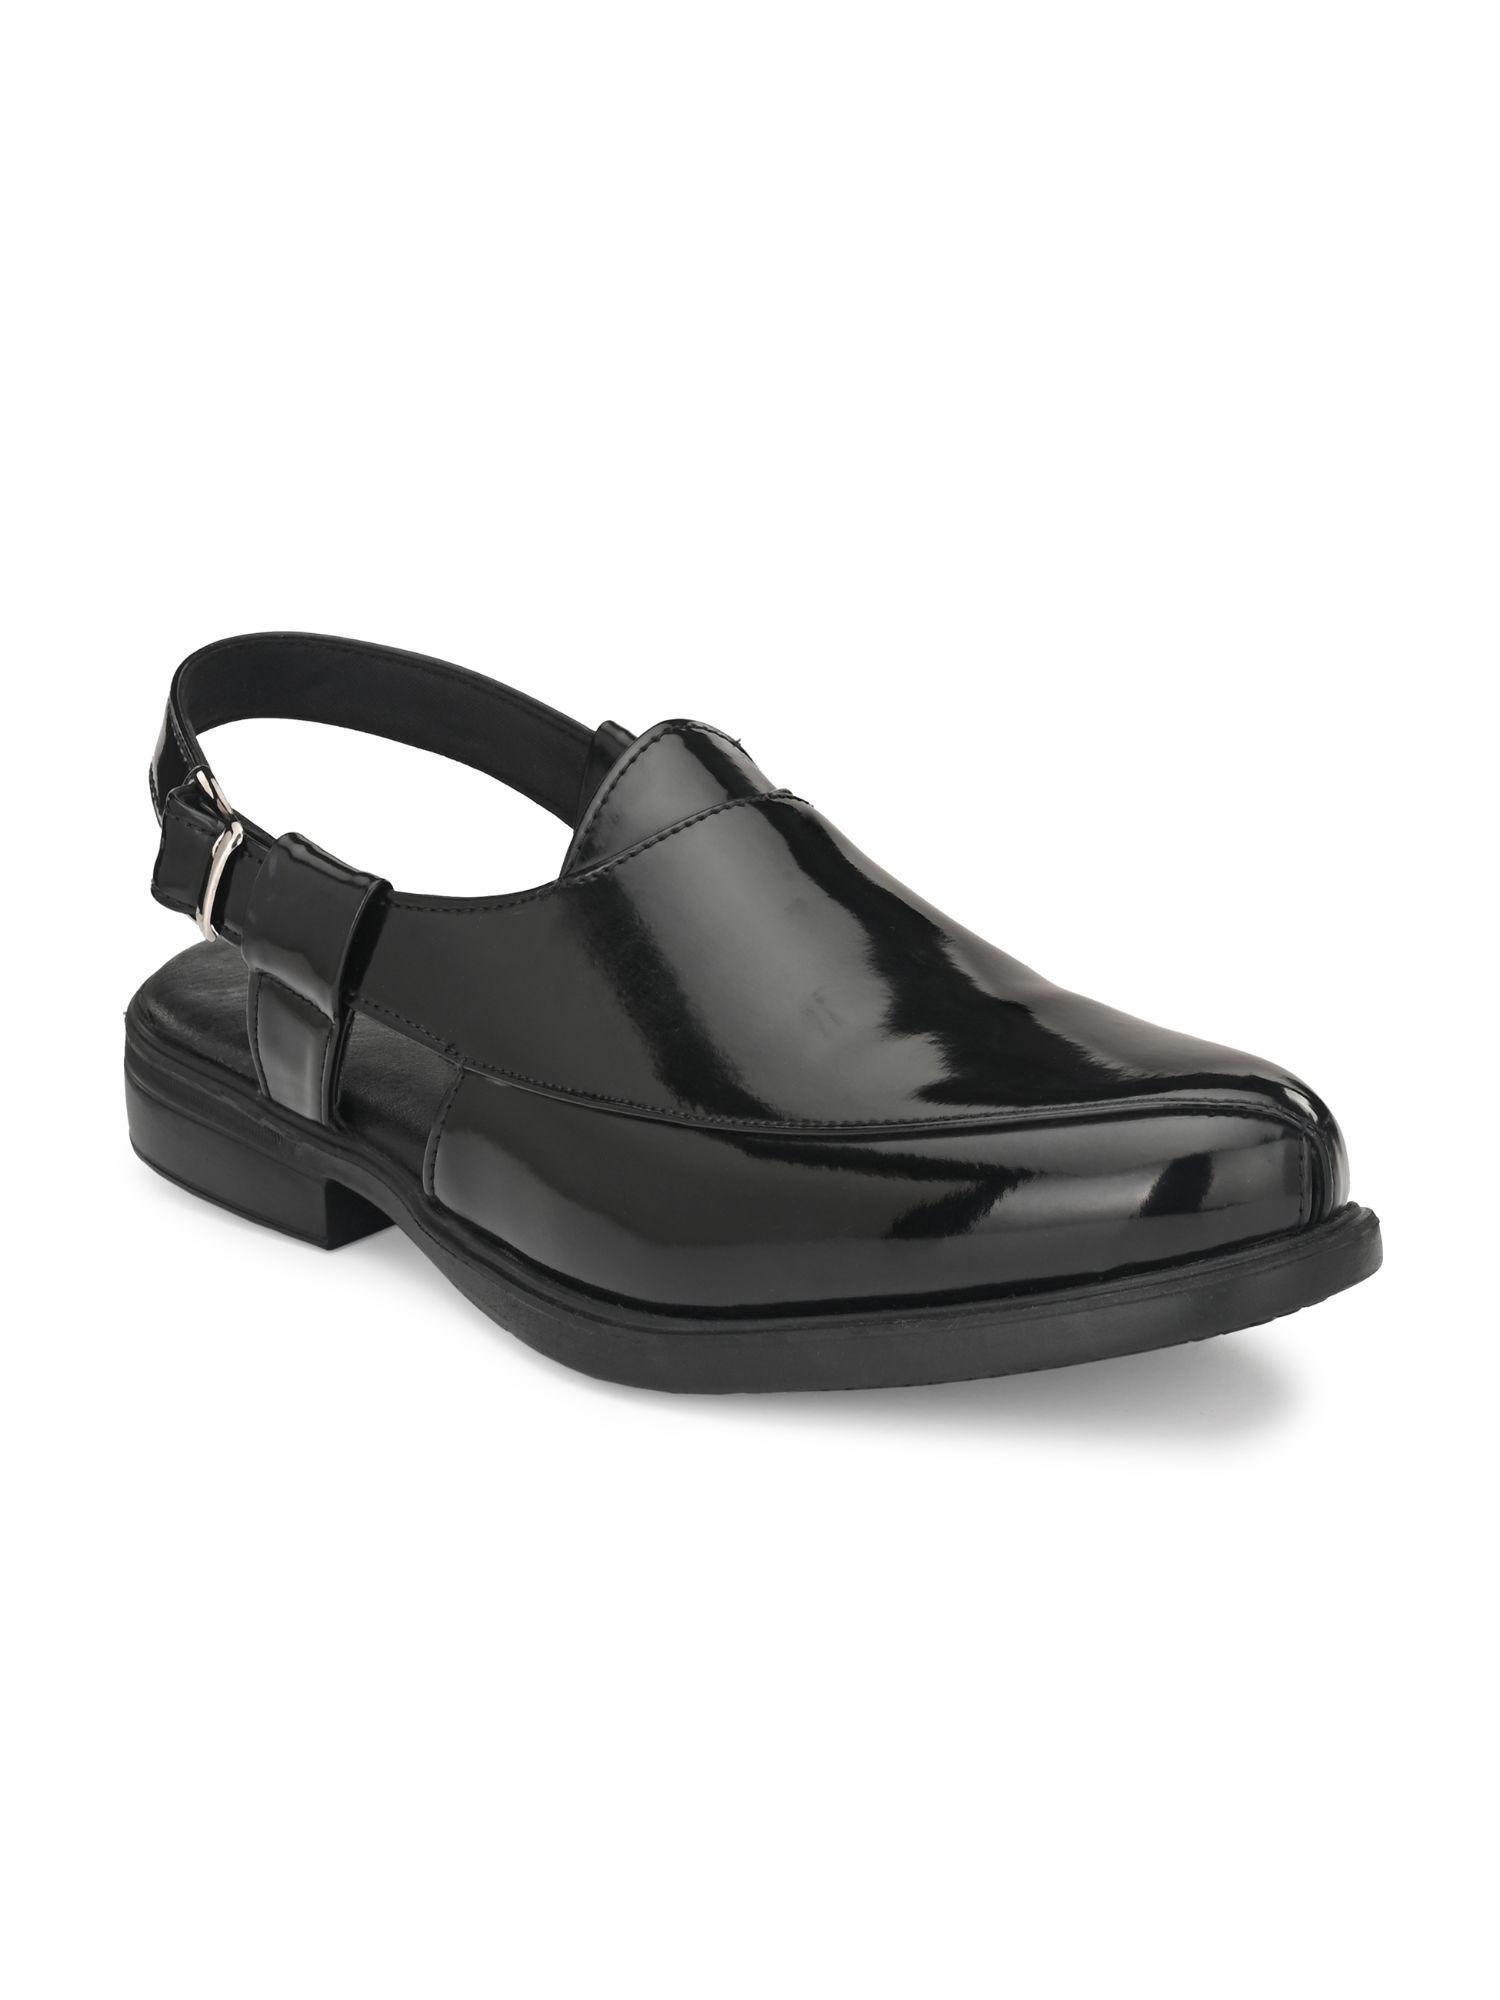 mens black solid roman casual sandals